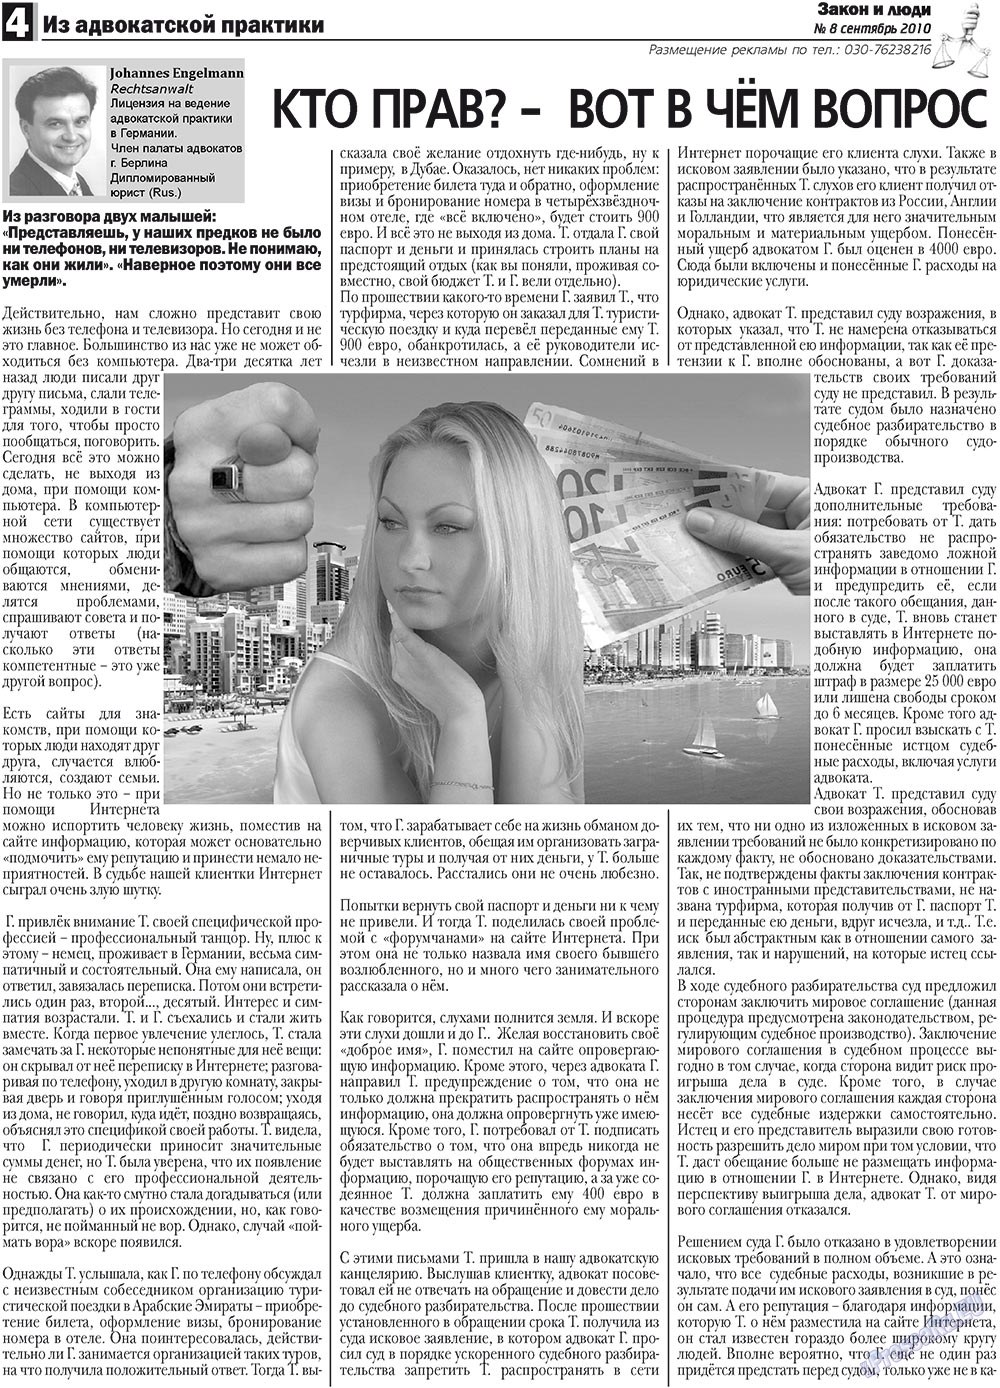 Закон и люди, газета. 2010 №8 стр.4